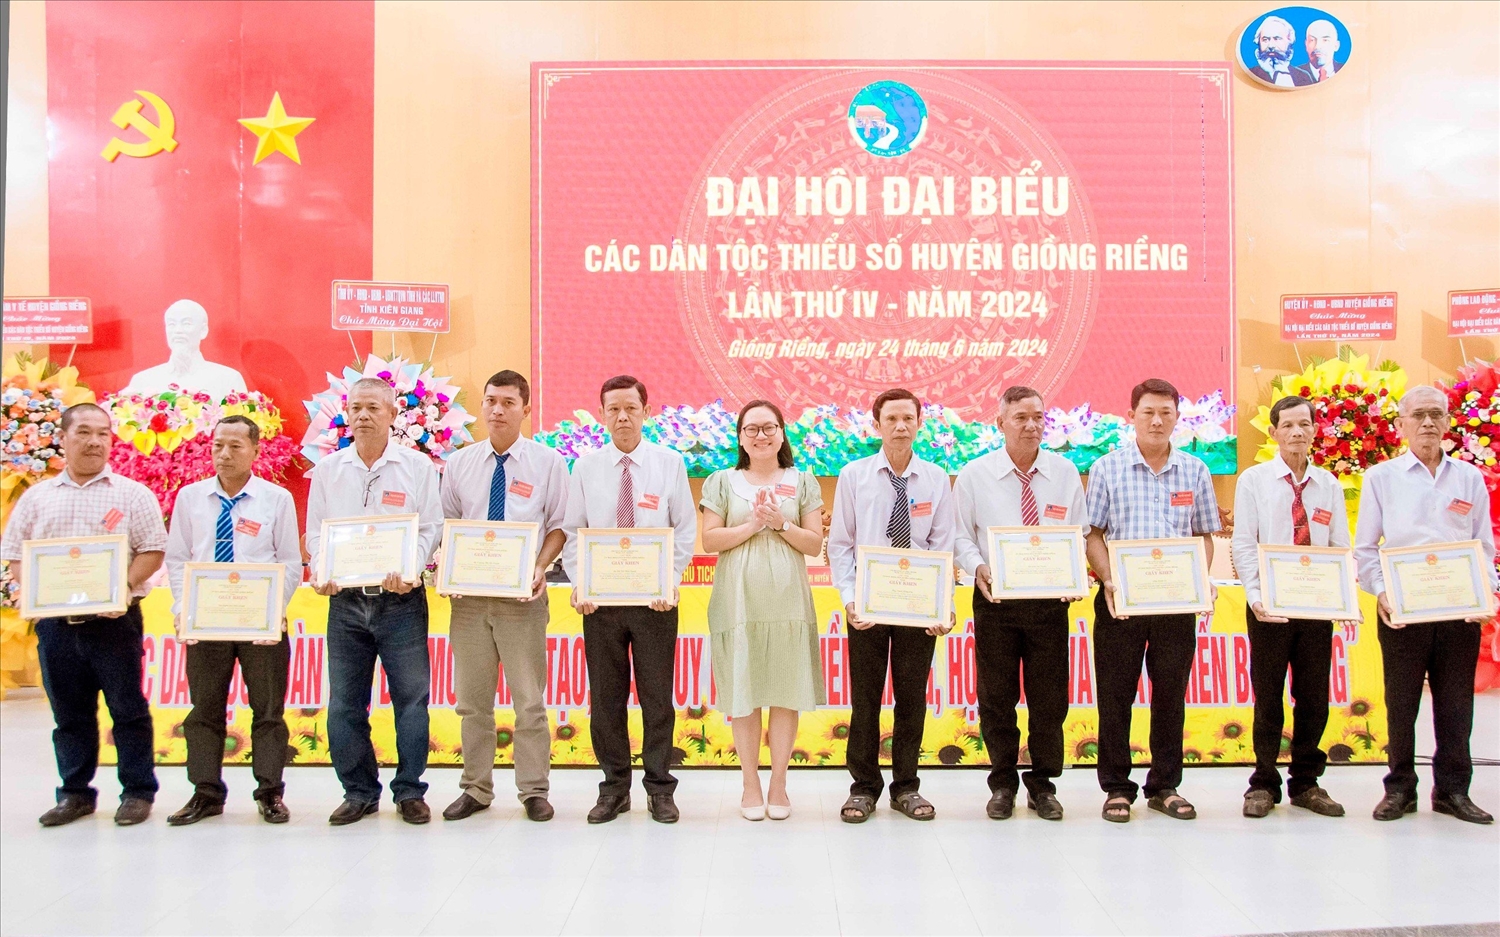  Bà Triệu Thị Huyền Trân, Phó Chủ tịch UBND huyện Giồng Riềng trao Giấy khen của UBND huyện cho các cá nhân